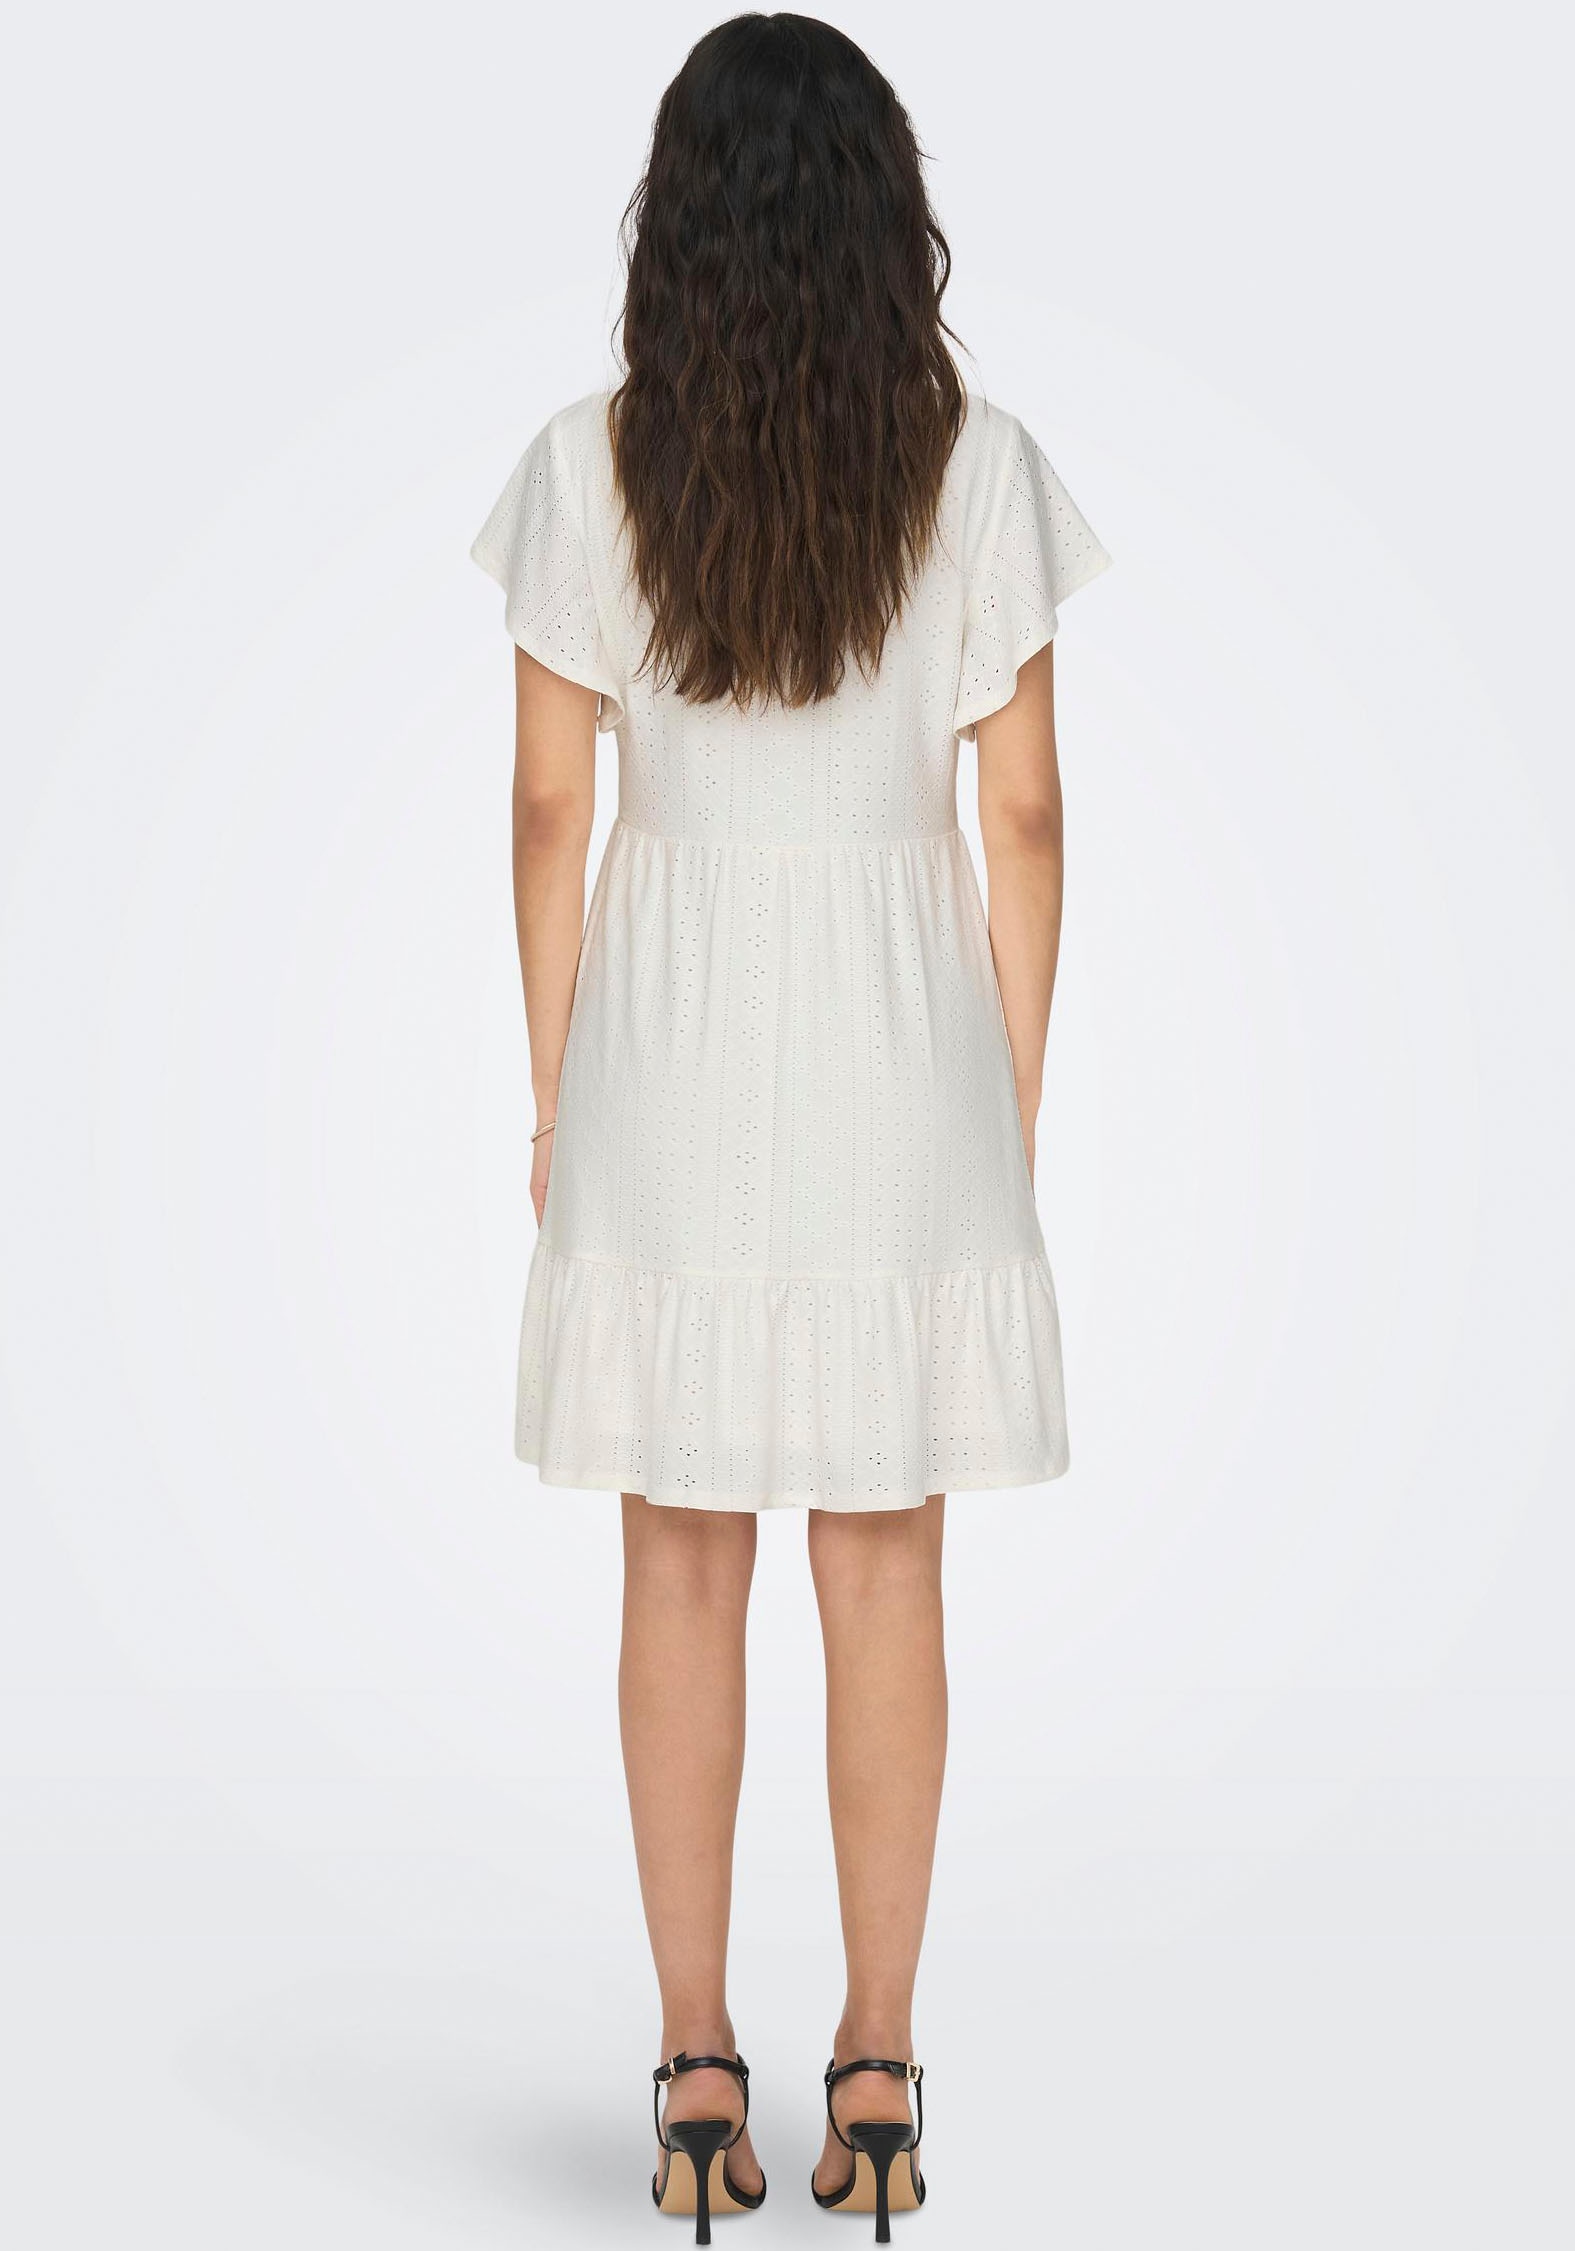 DRESS »ONLSANDRA online ONLY bei V-NECK kaufen OTTO S/S JRS« Jerseykleid